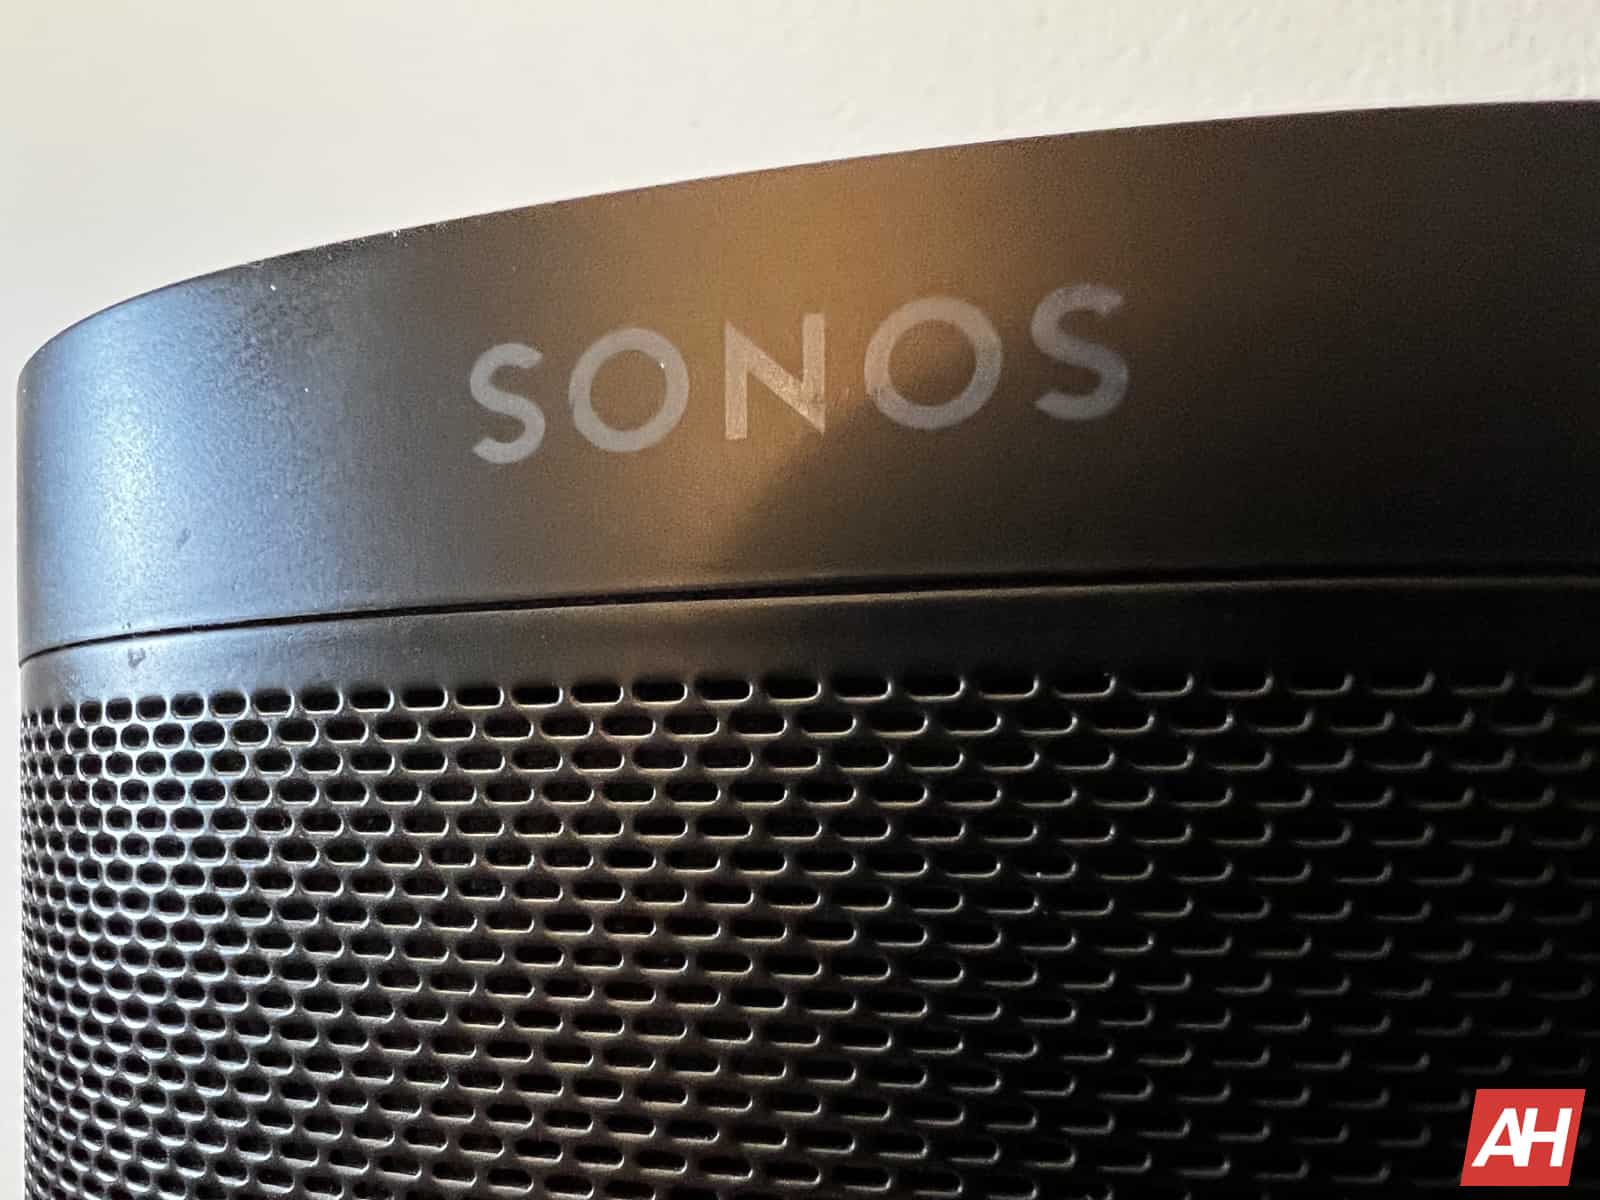 Los auriculares Sonos Ace con almohadillas magnéticas se filtraron junto con el precio